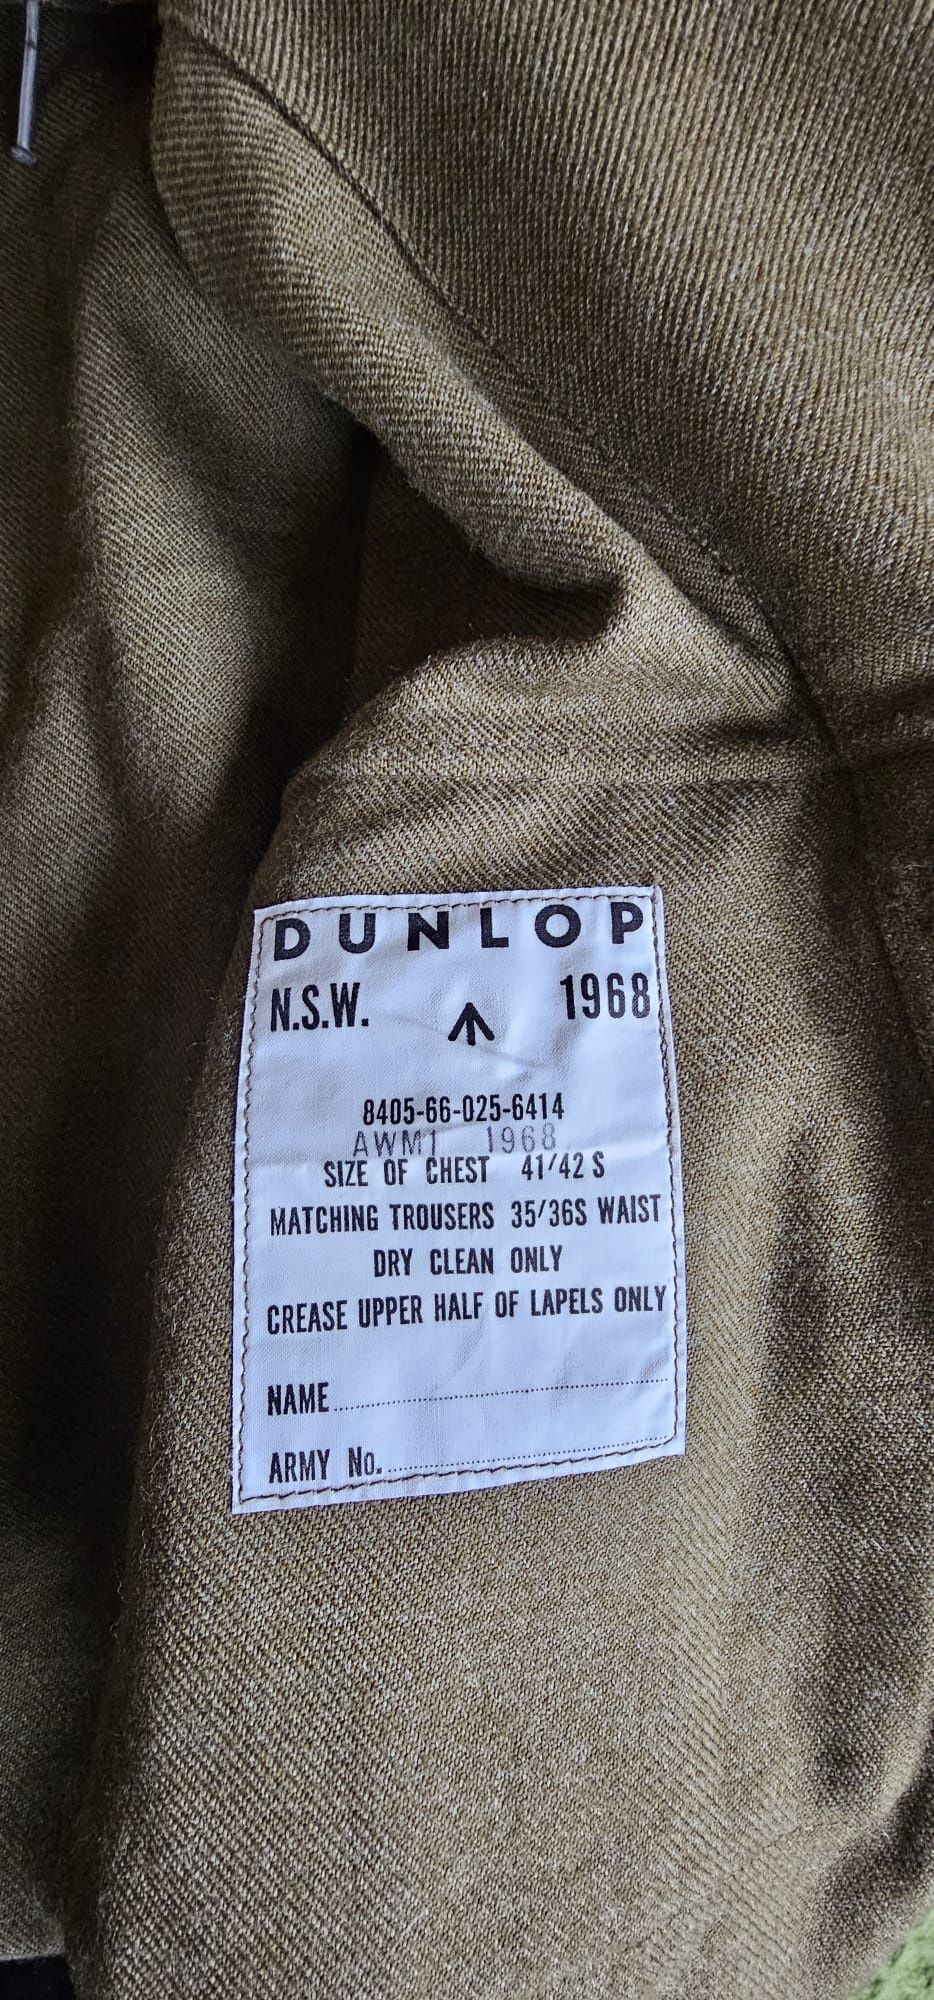 Rarytas, bluza BattleDress. Dunlop 1968